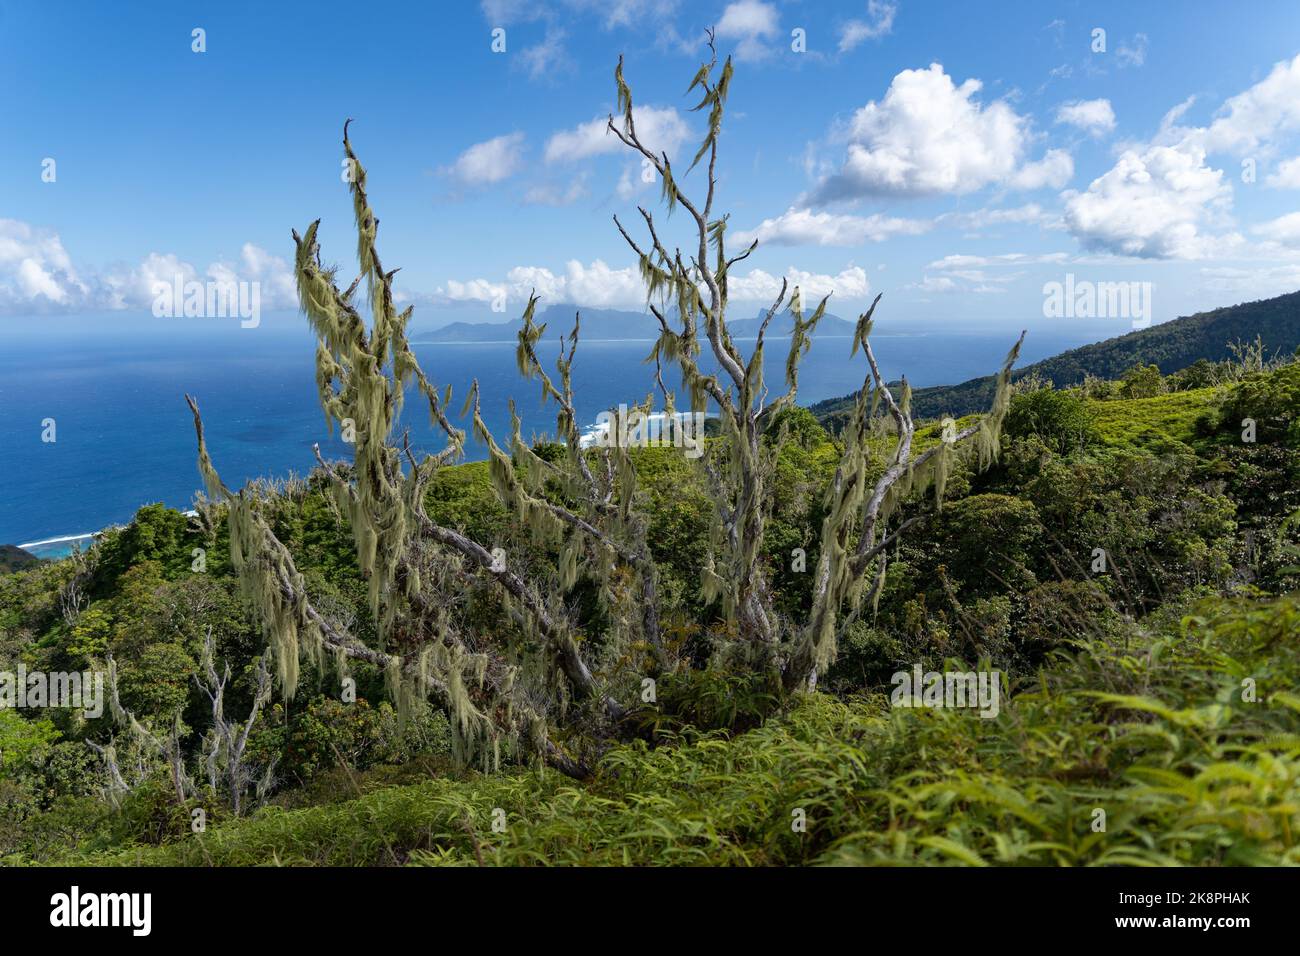 La barba del vecchio con vegetazione verde sullo sfondo del cielo blu. Moorea, Polinesia francese. Foto Stock